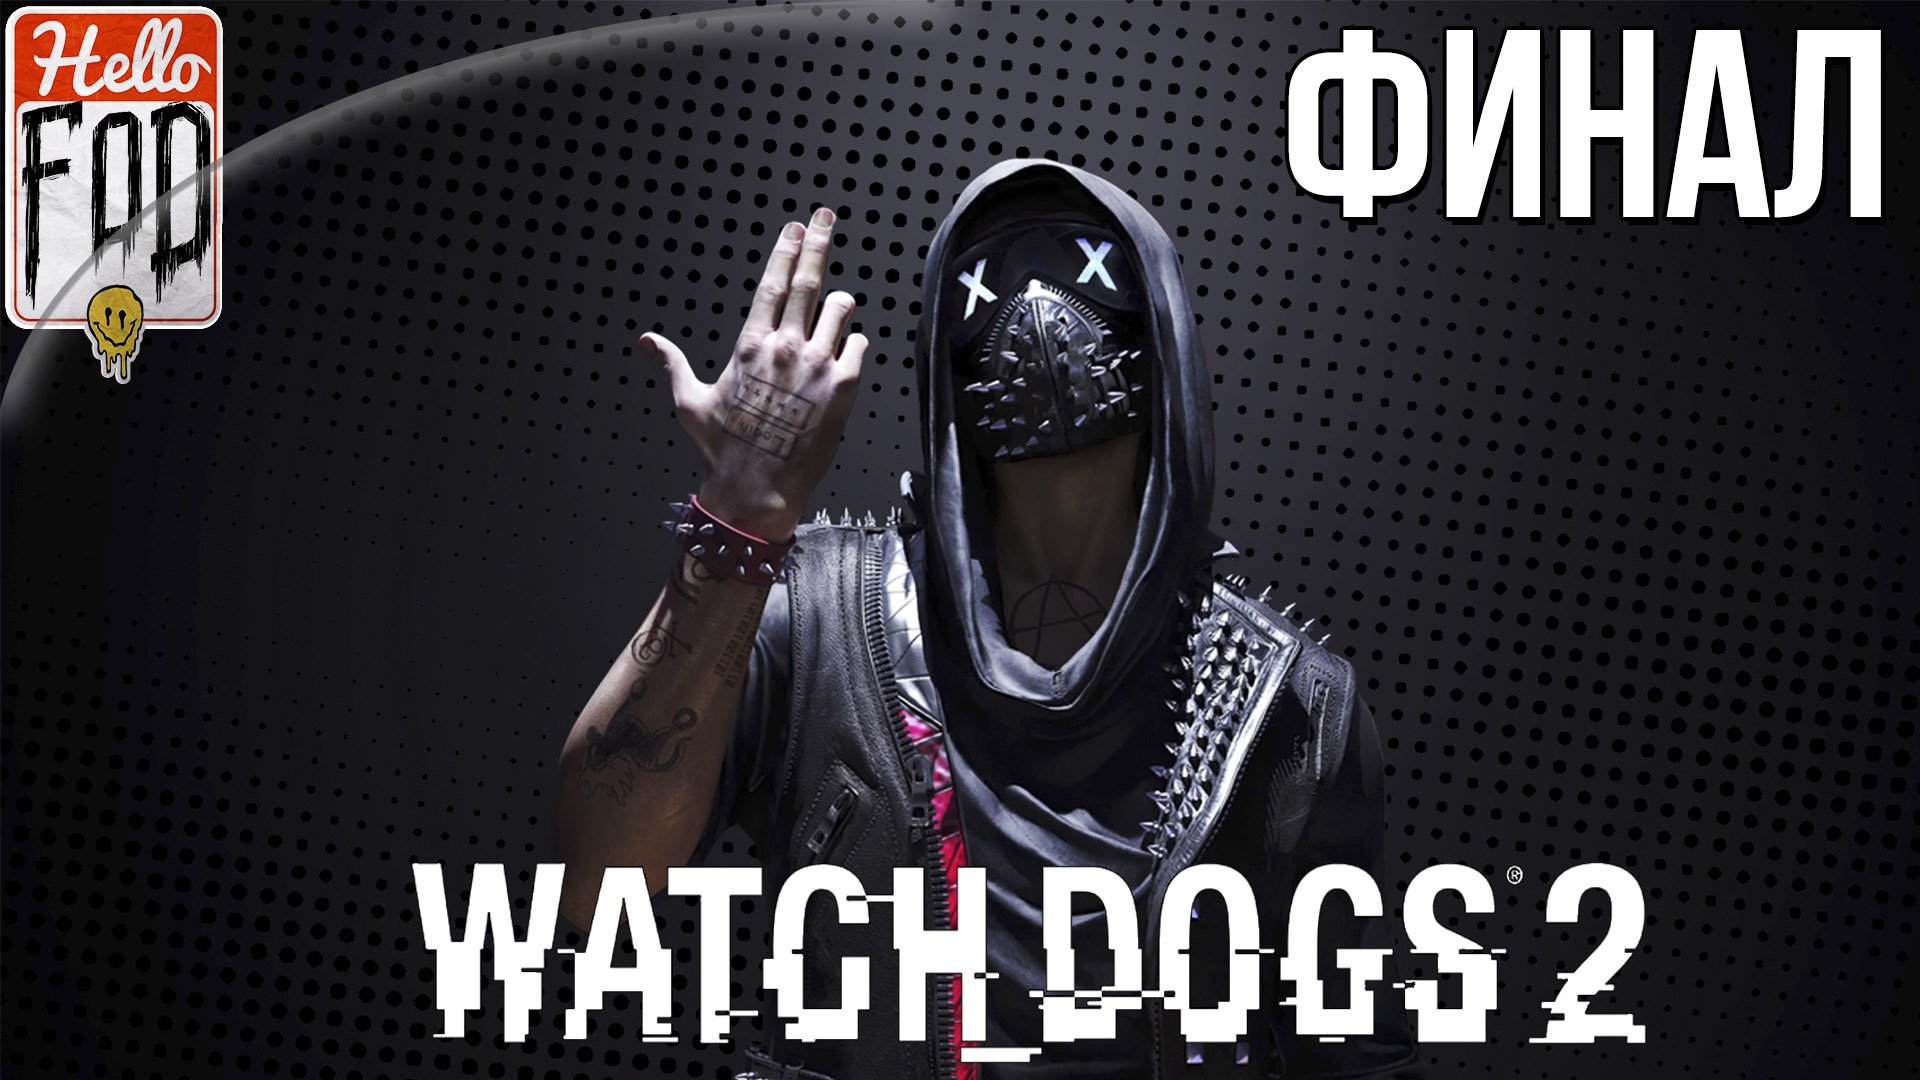 Watch Dogs 2 (Сложность Реалистичная)  ➤ Полная мощность ➤ Финал!.mp4